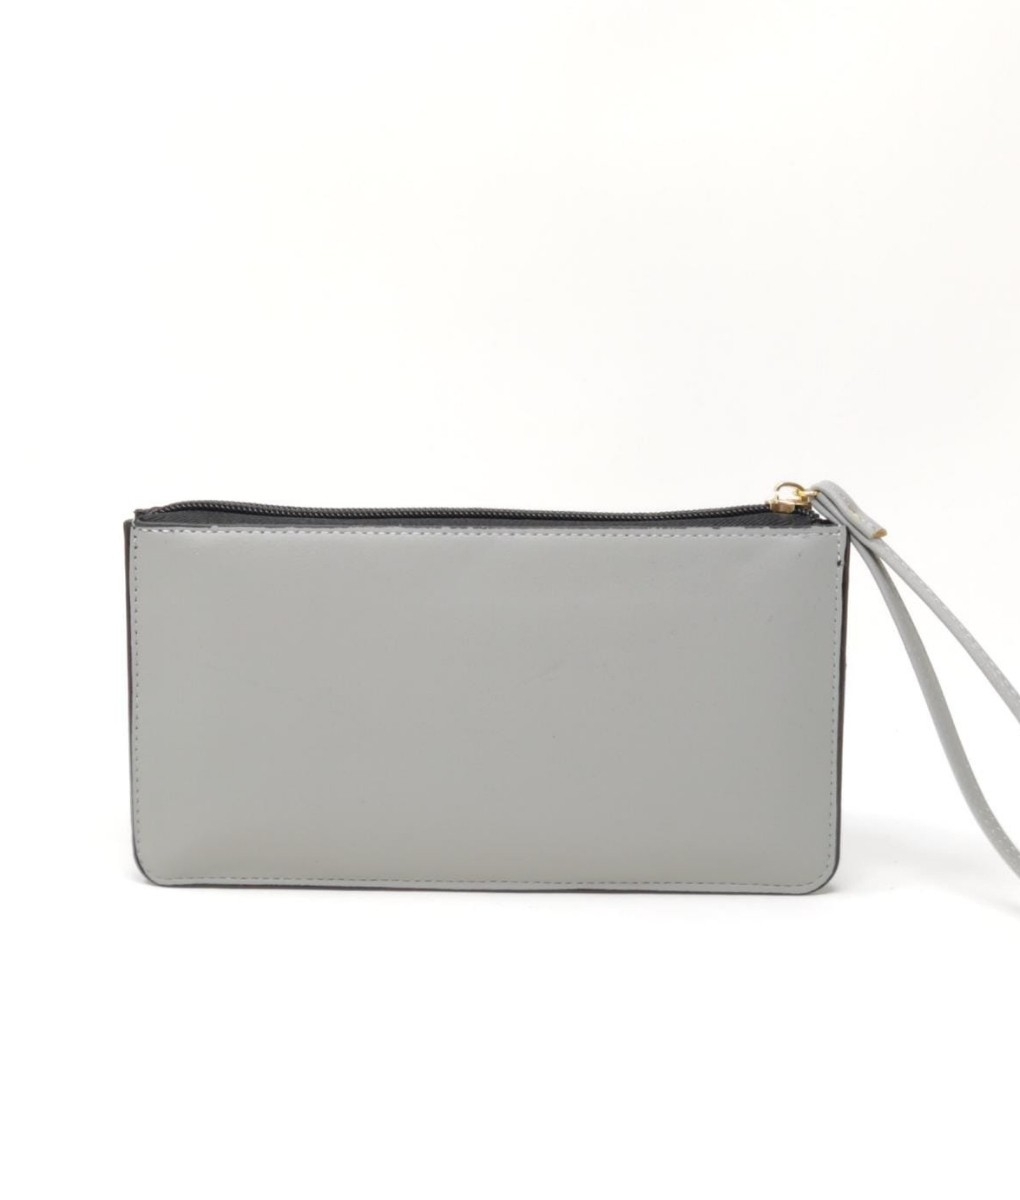 luna wallet - gray